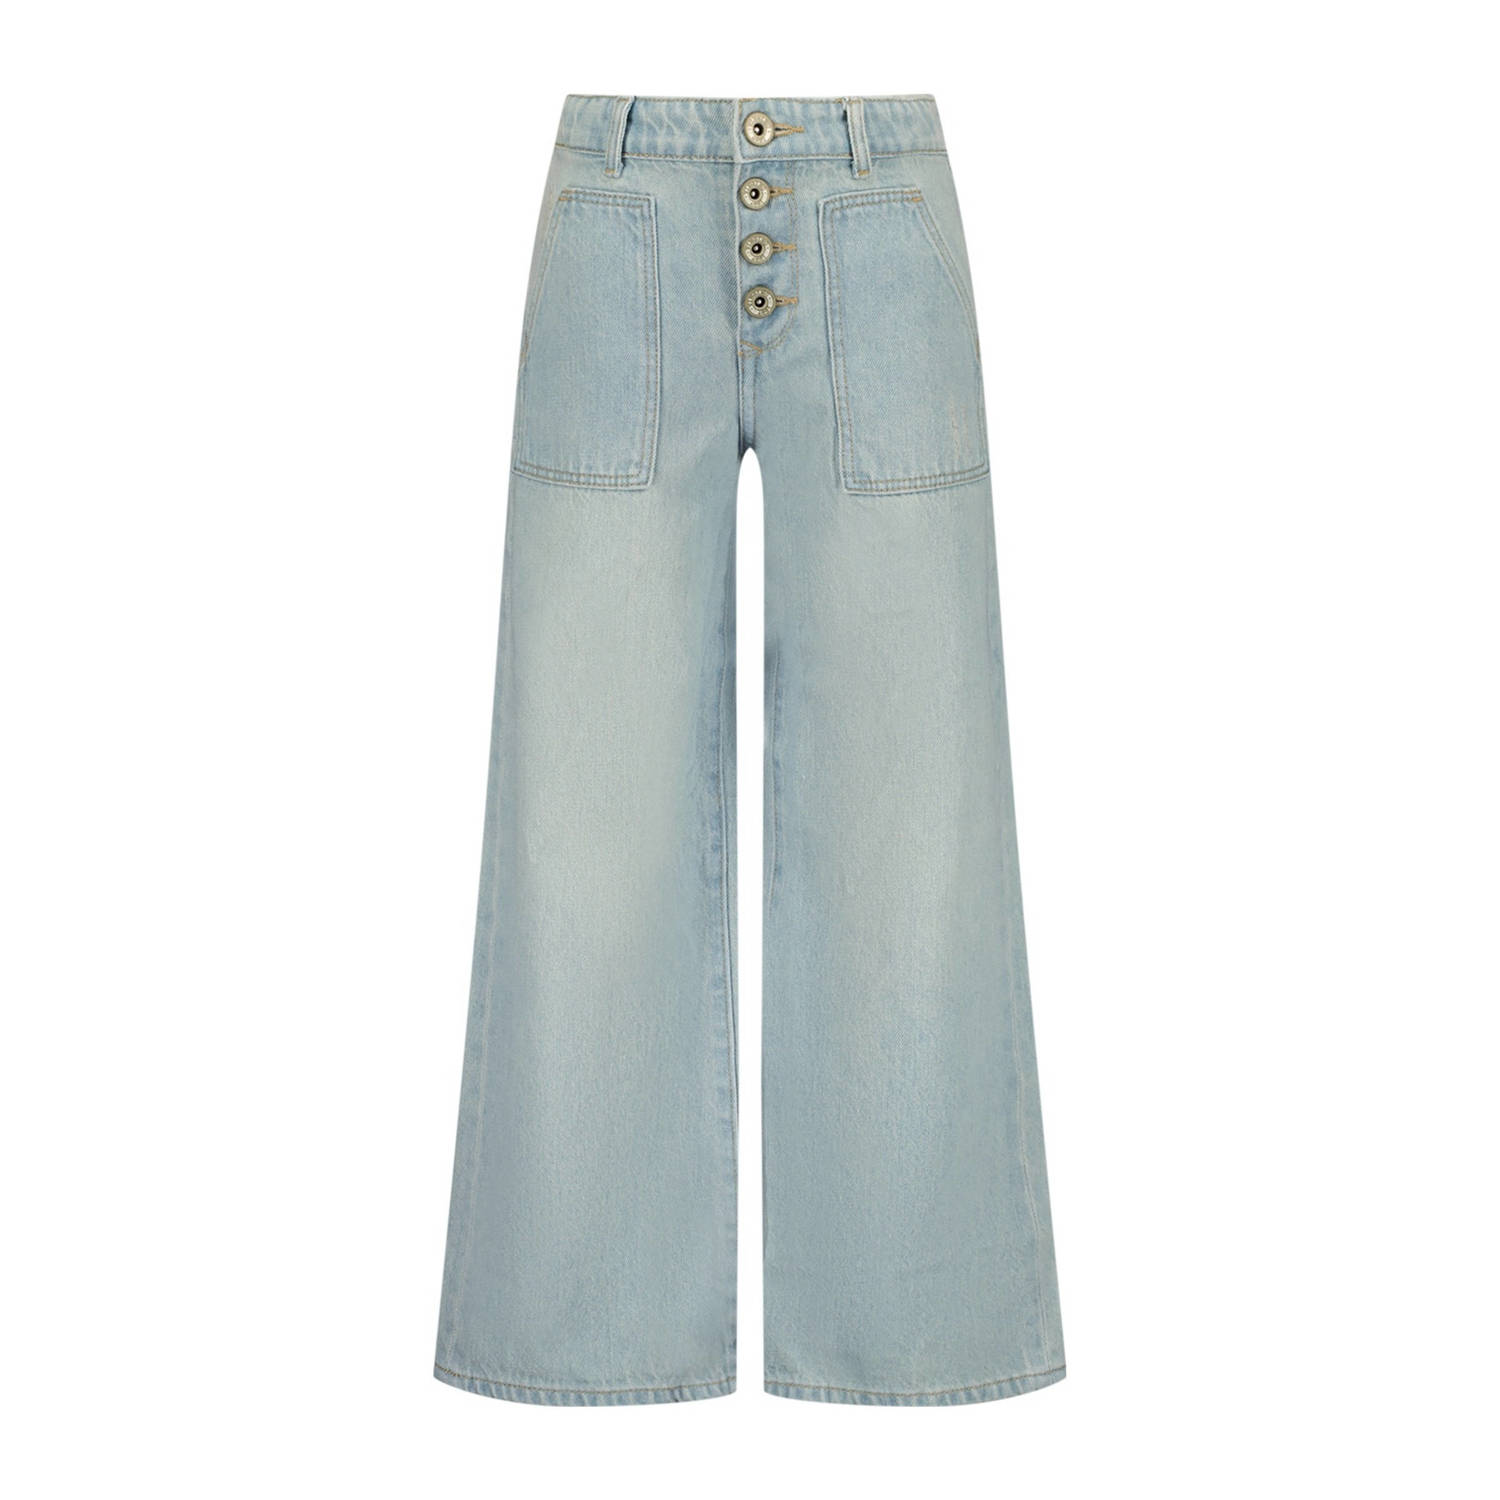 VINGINO high waist wide leg jeans Cassie light vintage Blauw Meisjes Denim 134